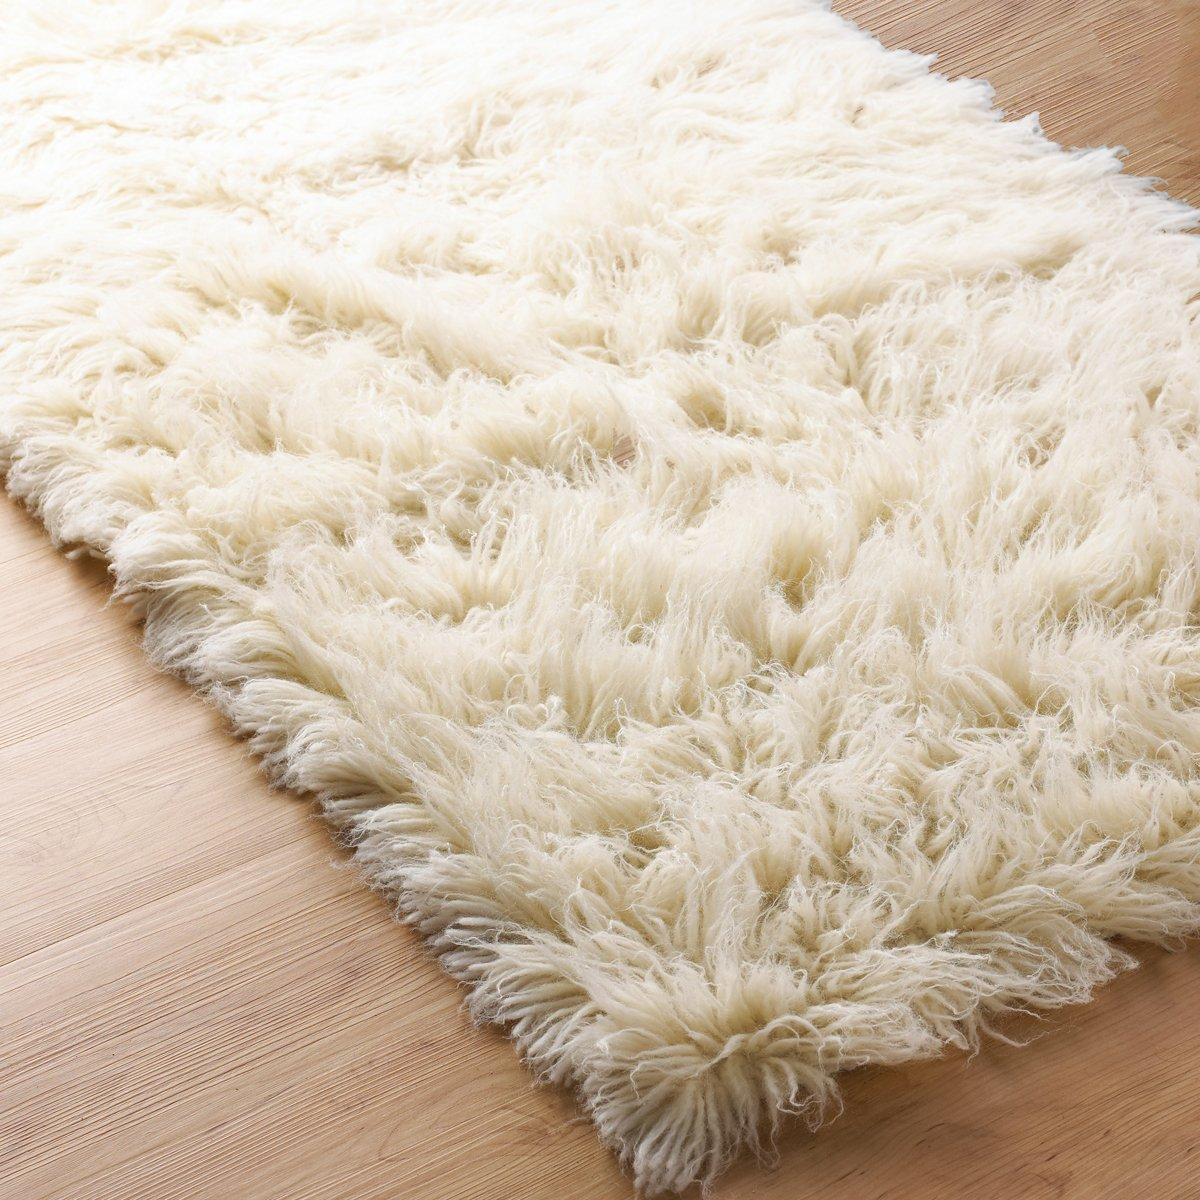 Supreme Woven Area Rug 5x7 Hand woven New Zealand wool rug is